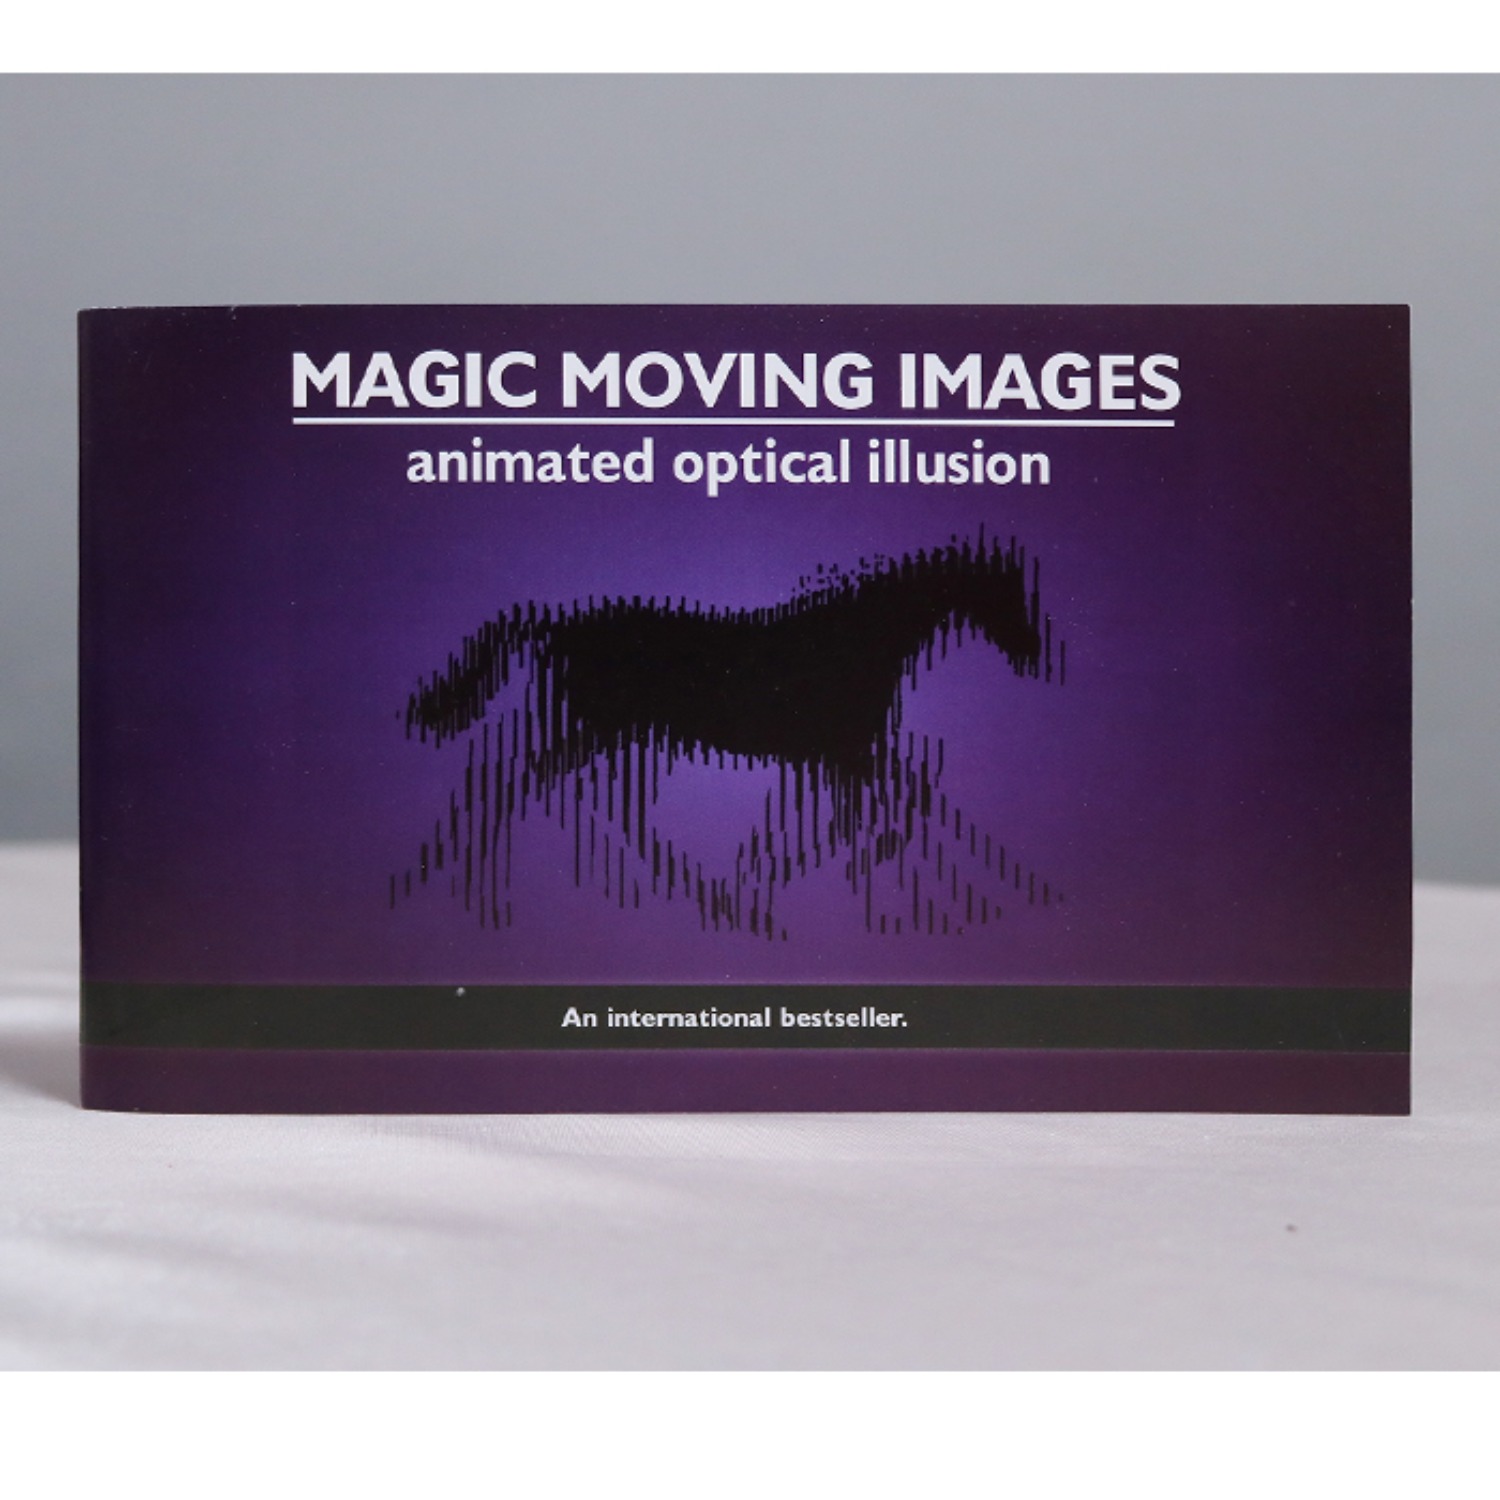 [옵티컬 일루전]animated optical illusion 정지된 그림을 움직이게 하는 과학마술입니다.